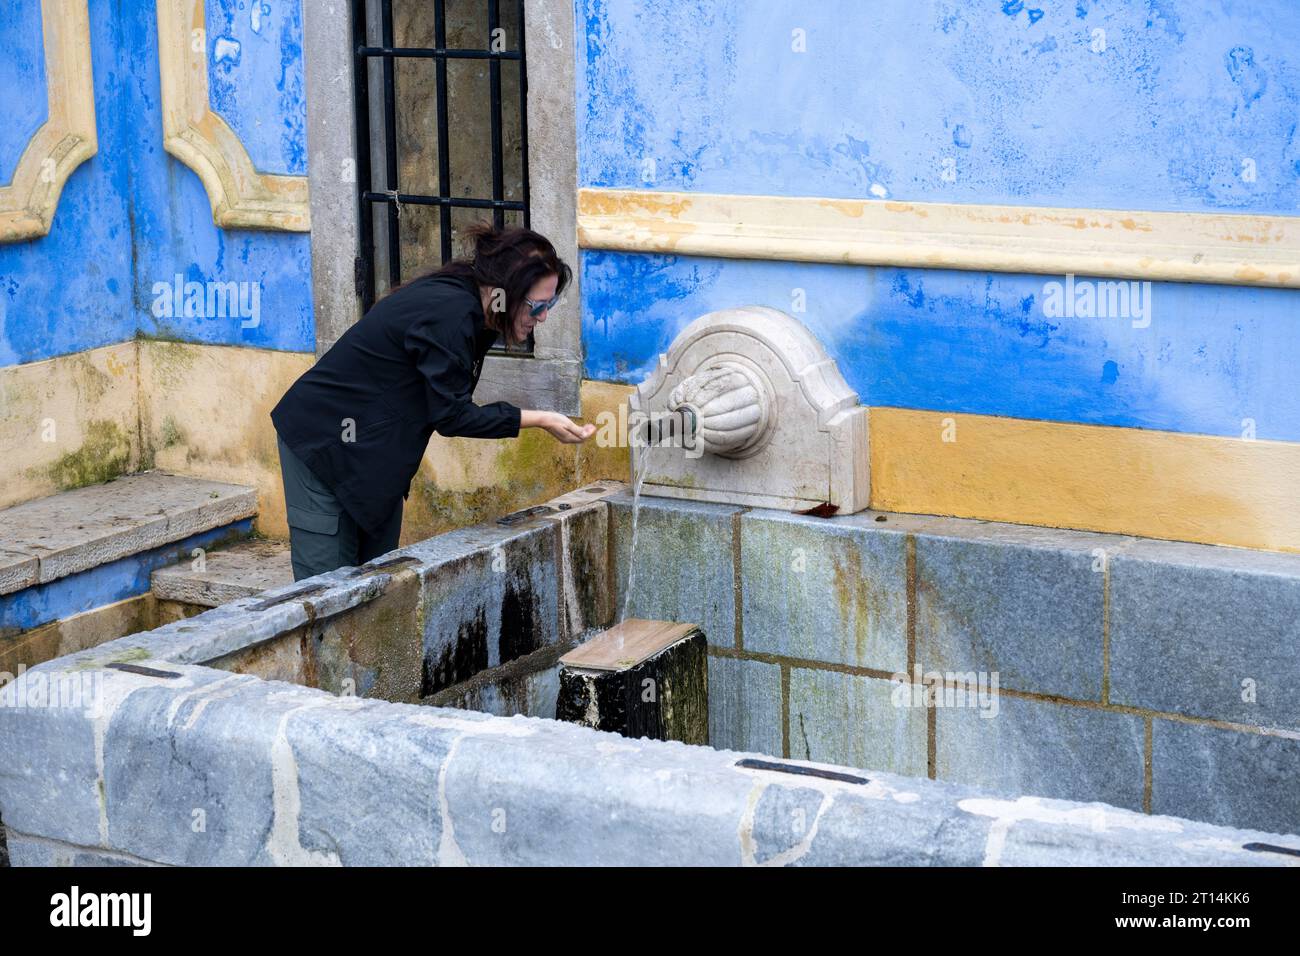 Une femme locale remplit des bouteilles d'eau en plastique à la fontaine Sabuga à Sintra Sintra Sintra est une ville et une municipalité dans la région du Grand Lisbonne au Portugal, Banque D'Images